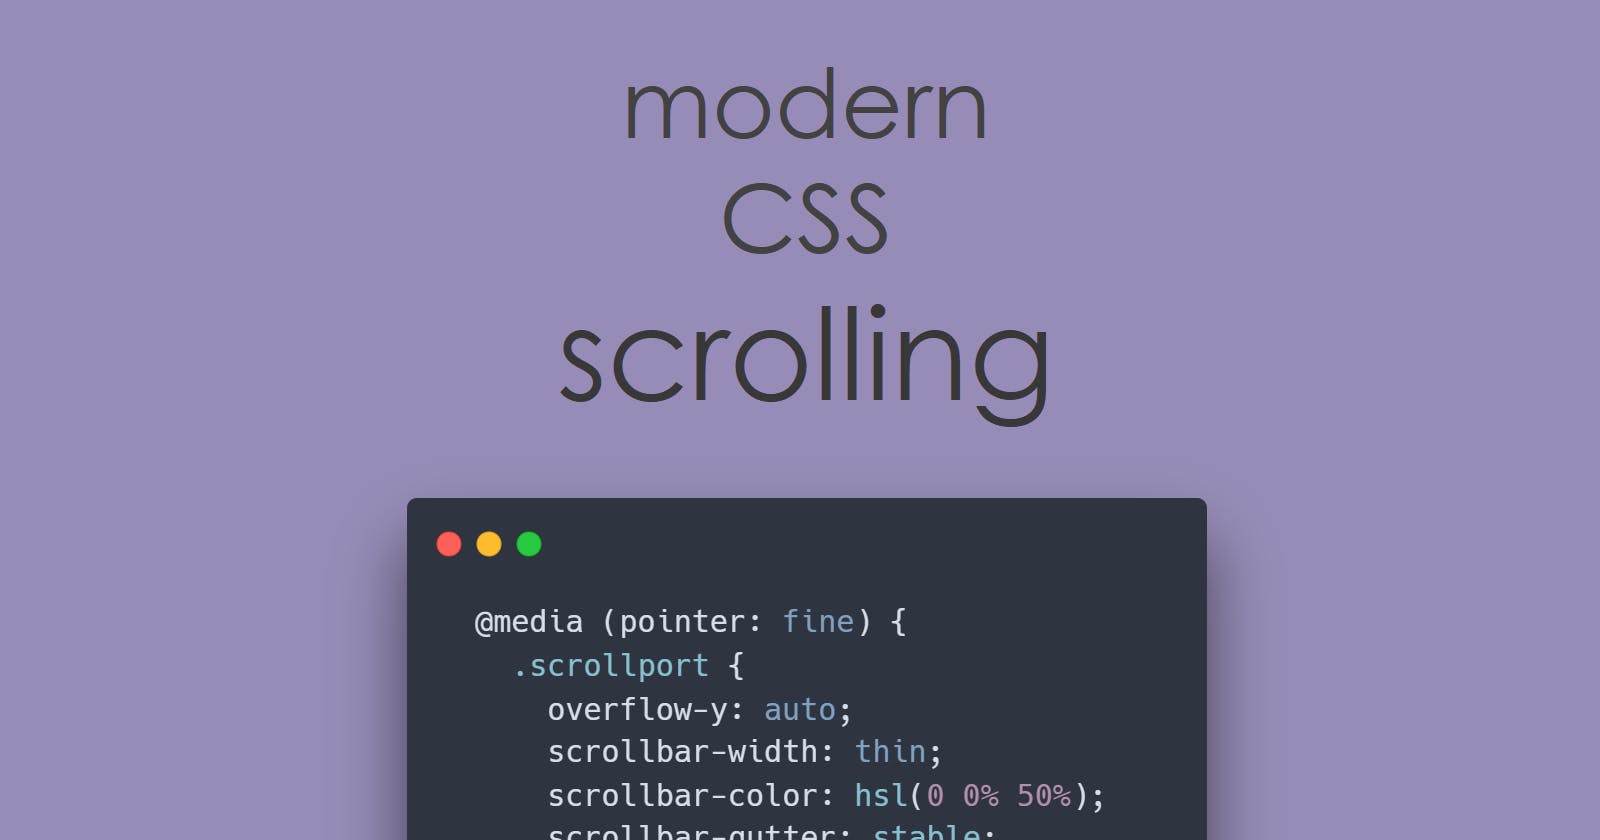 Better scrolling through modern CSS